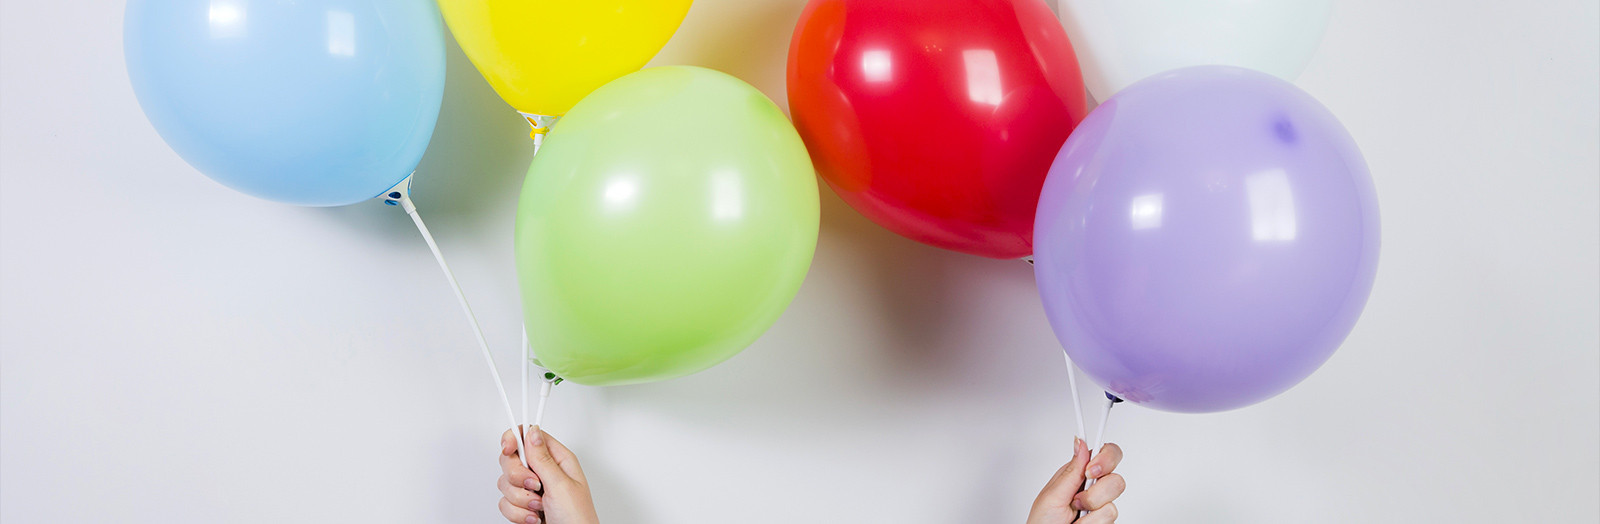 Ballon Chiffre - Numero 0 Couleur Rose - Decoration Anniversaire, Ballons  anniversaire, Bapteme, Fête, Celebration - Ballon Gonflable en Air ou  Helium